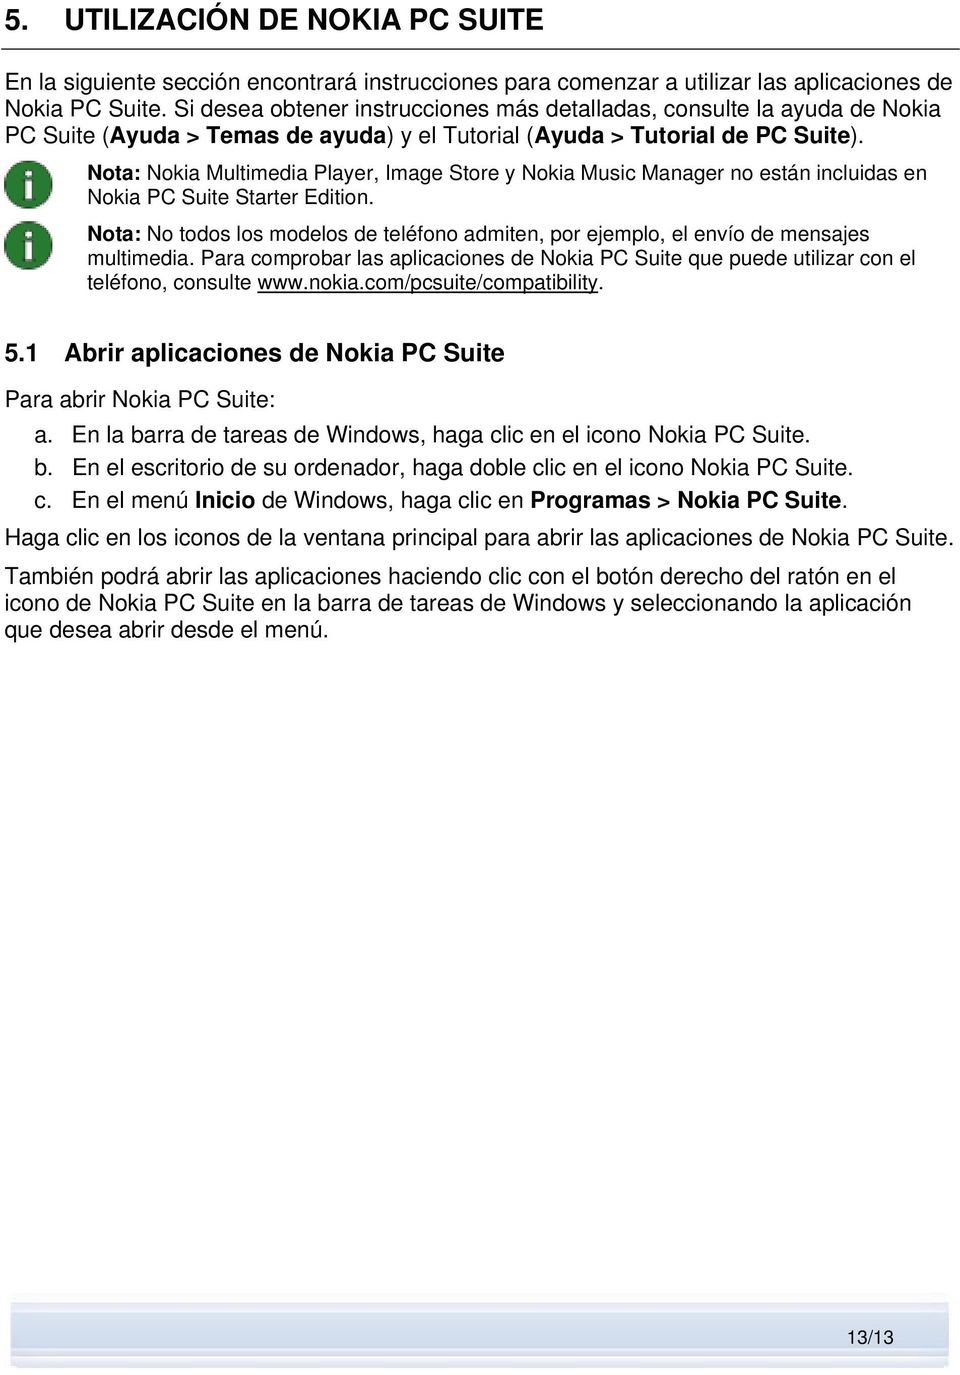 Nota: Nokia Multimedia Player, Image Store y Nokia Music Manager no están incluidas en Nokia PC Suite Starter Edition.